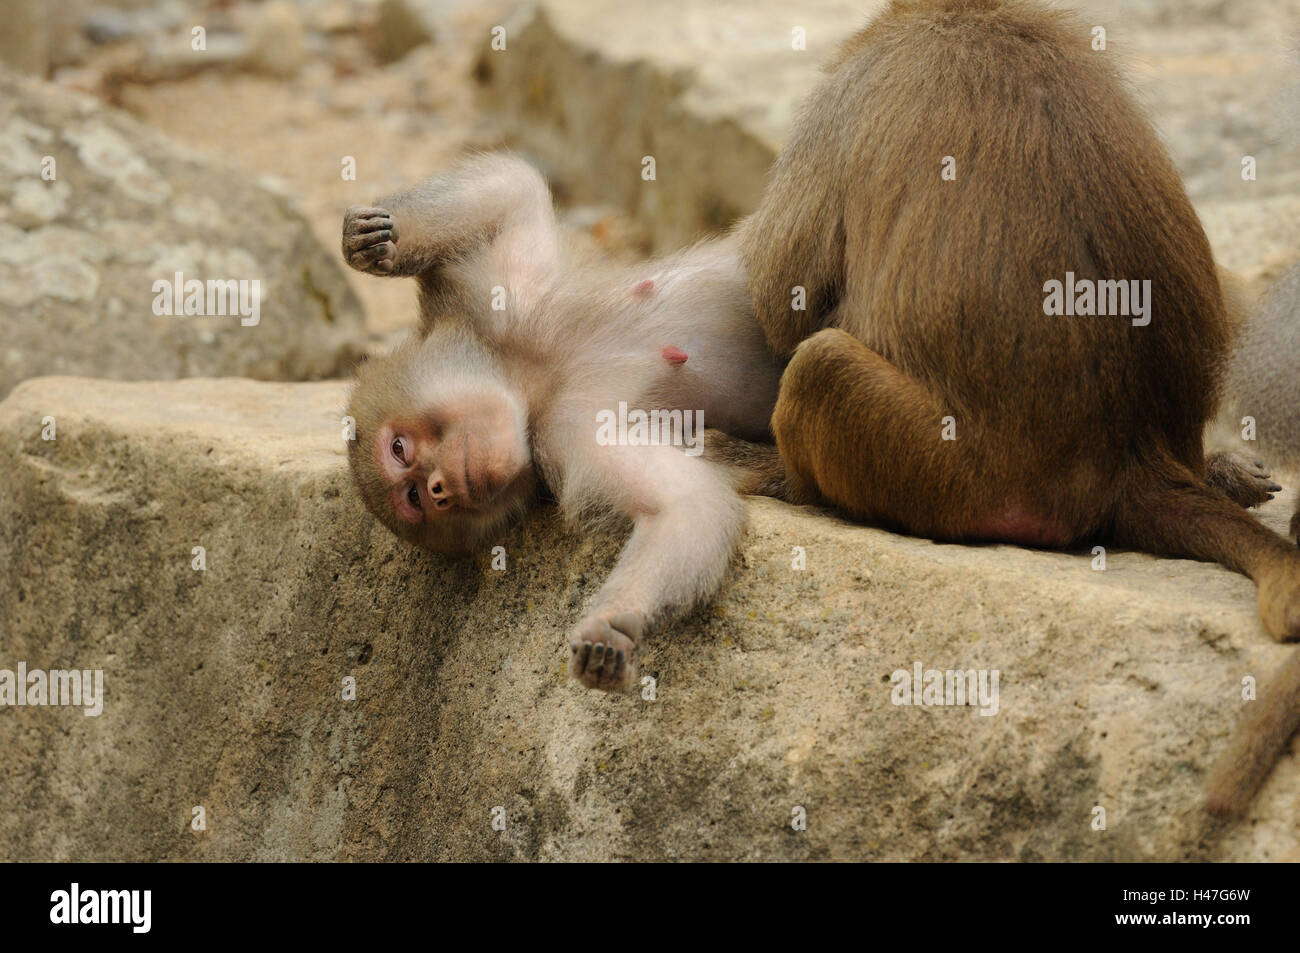 Hamadryas baboon, Papio hamadryas, female, rock, back, lying, Looking at camera, focus on the foreground, Stock Photo